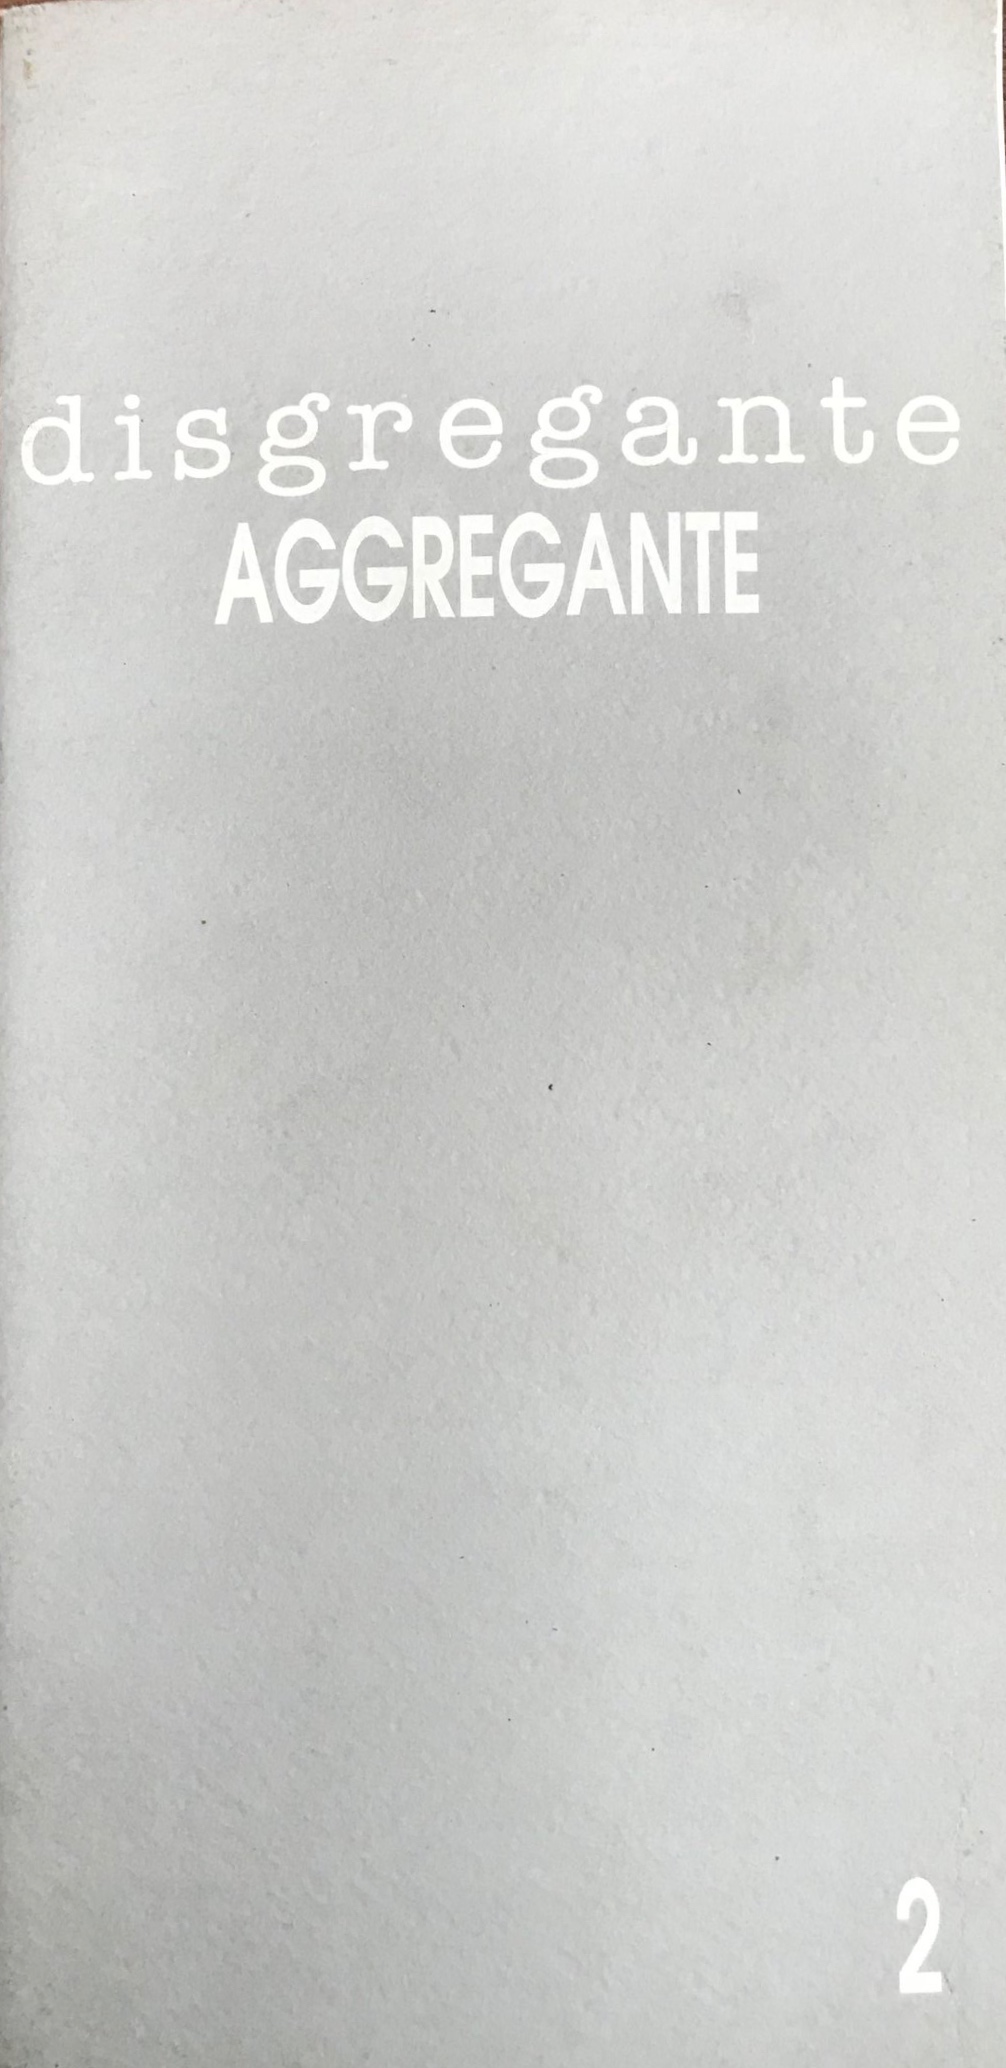 Disgregante/Aggregante